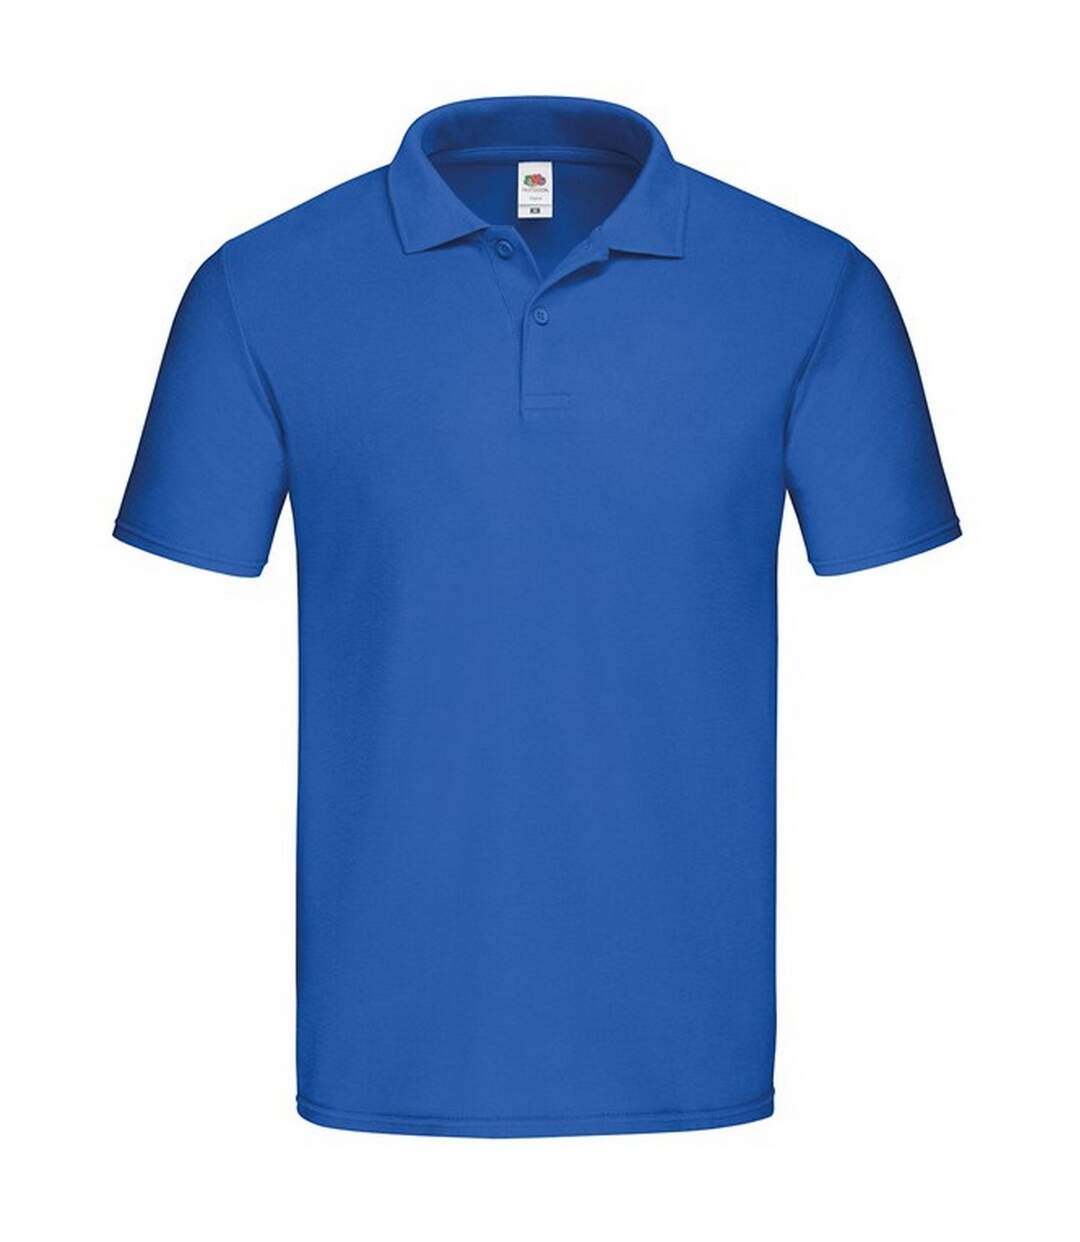 Fruit of the Loom Mens Original Polo Shirt (Royal Blue) - UTRW7879